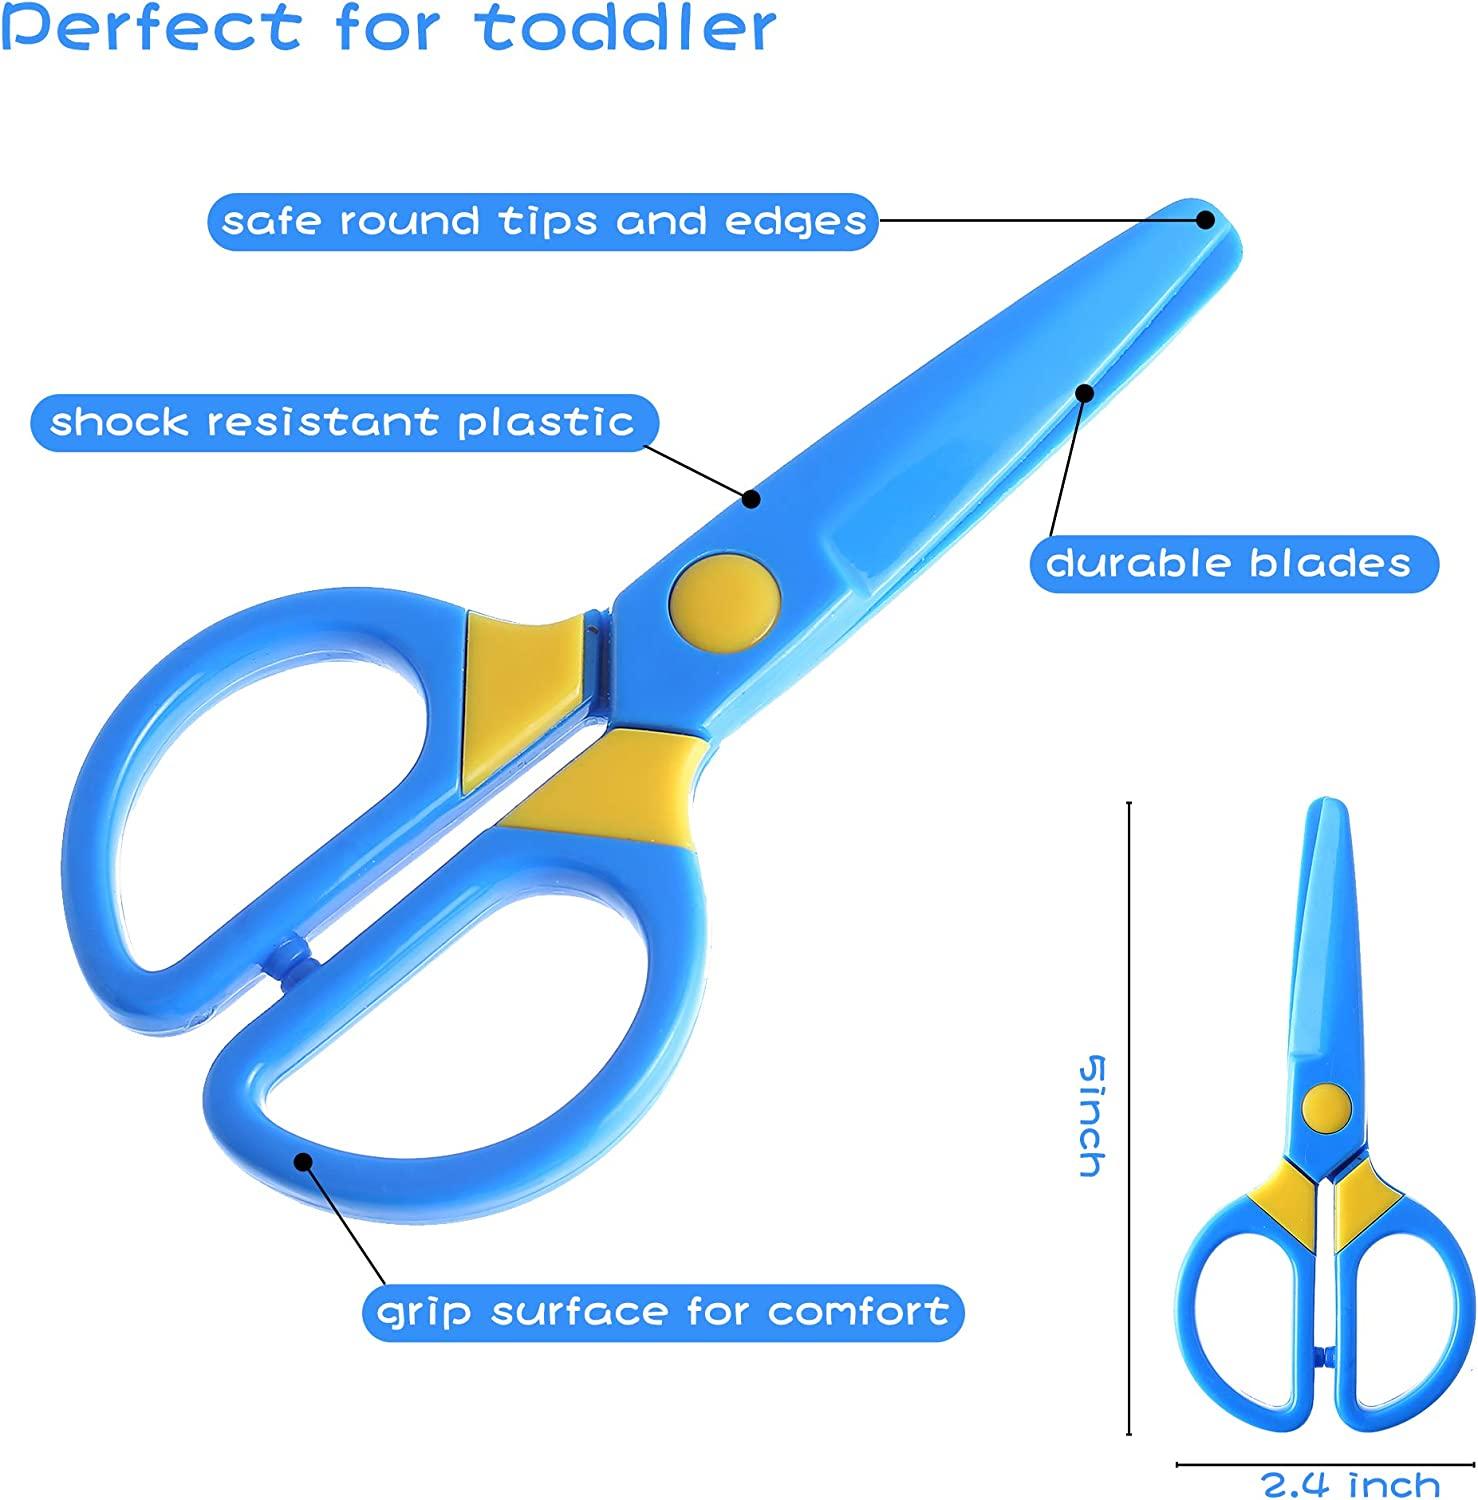 School Smart Blunt Tip Student Scissor, 5-1/4 Inches